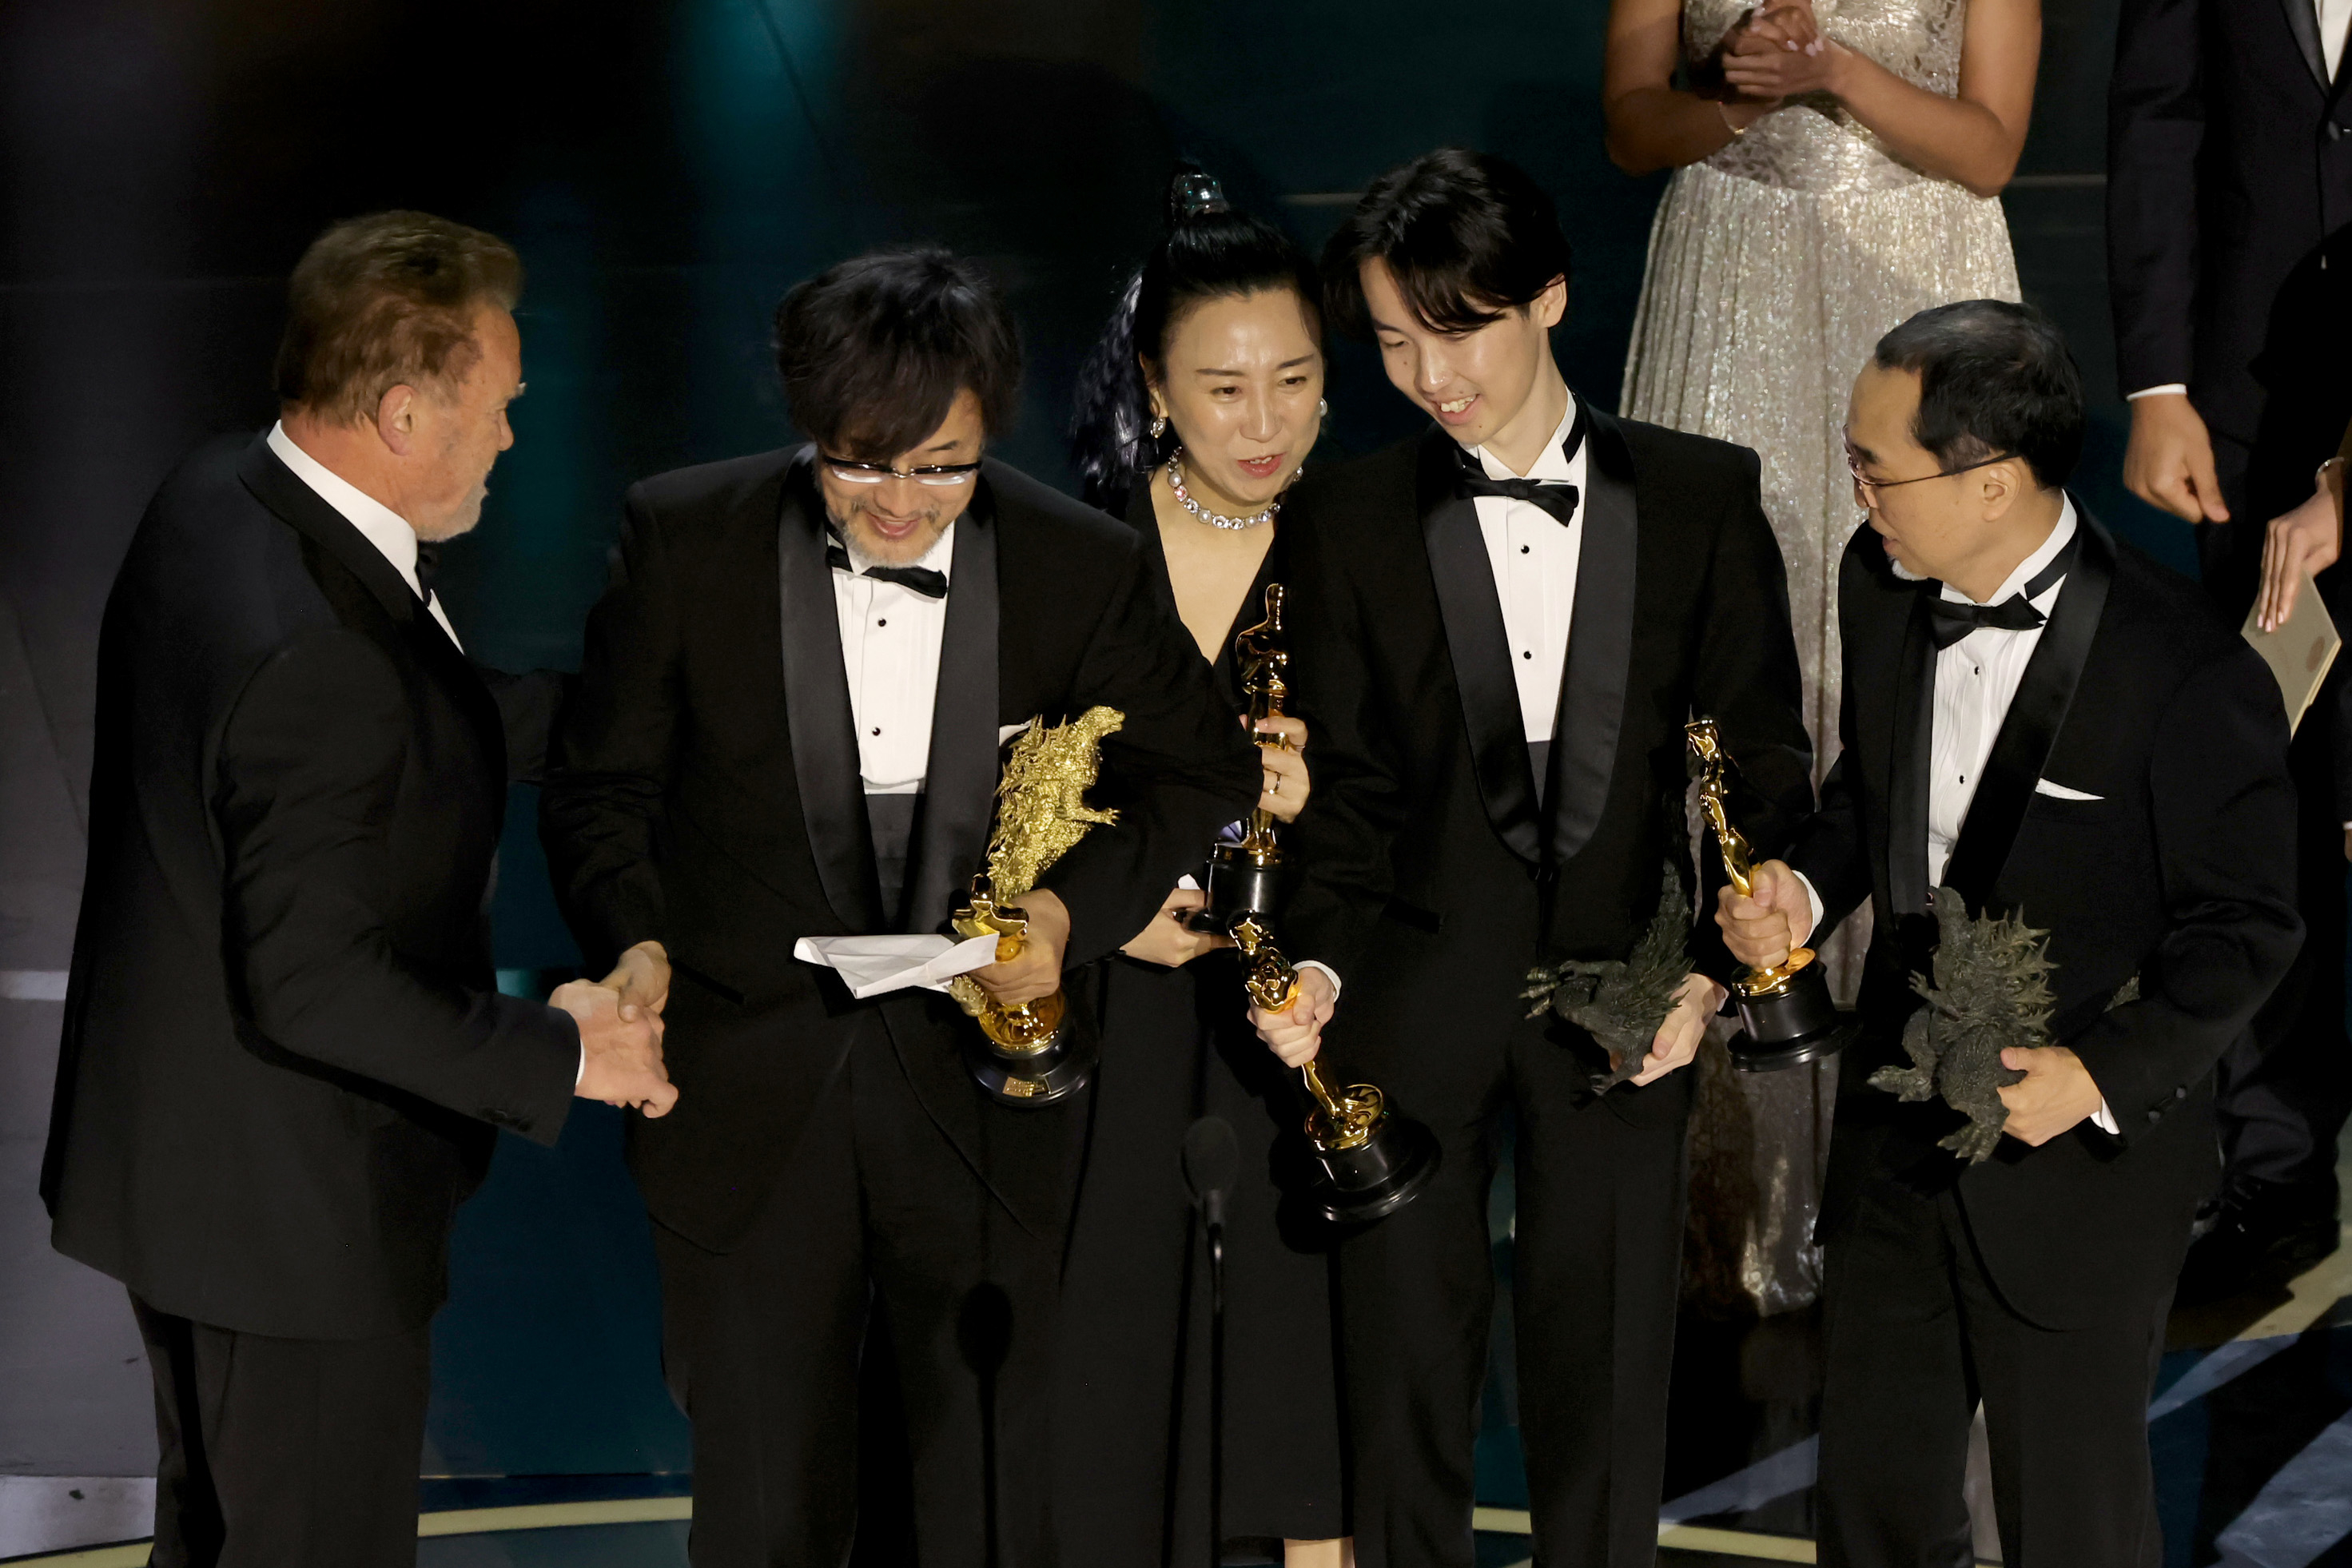 Masaki Takahashi, Takashi Yamazaki, Kiyoko Shibuya, and Tatsuji Nojima accept the Best Visual Effects Oscar from Arnold Schwarzenegger